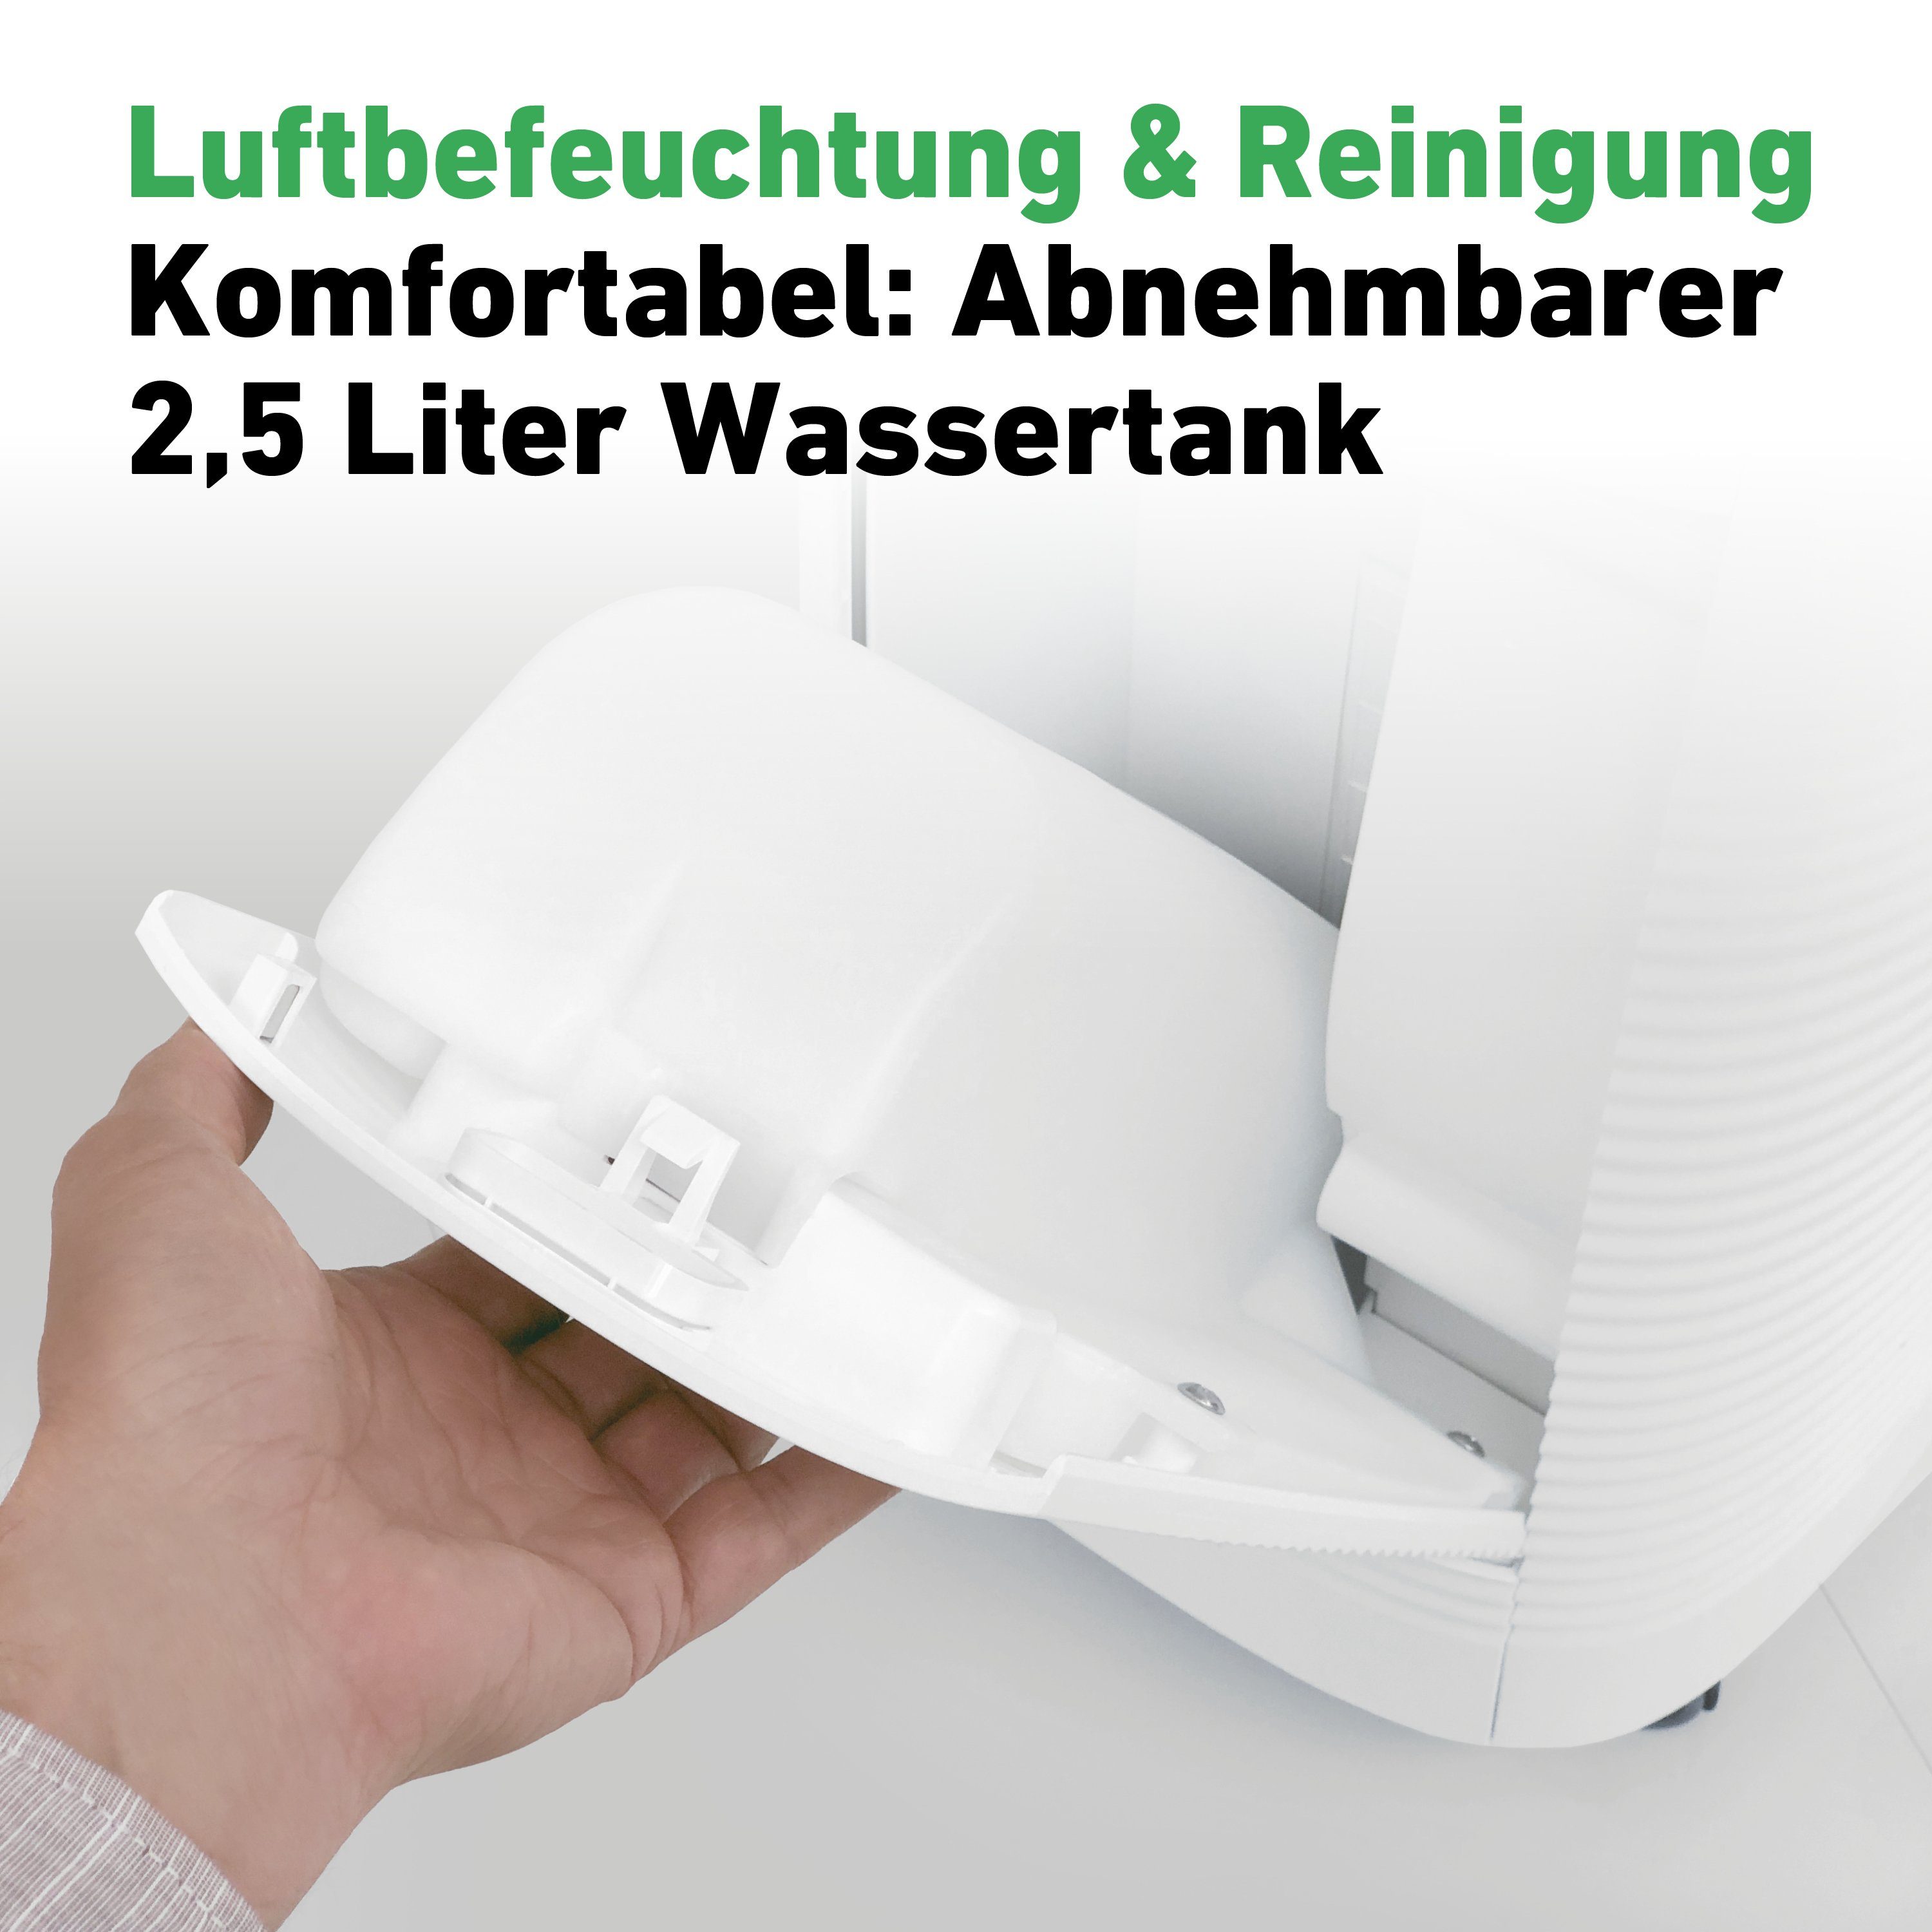 IDEAL Kombigerät Luftbefeuchter und -reiniger AP 35 H, für 45 m² Räume, Made  in Germany, für Allergiker empfohlen